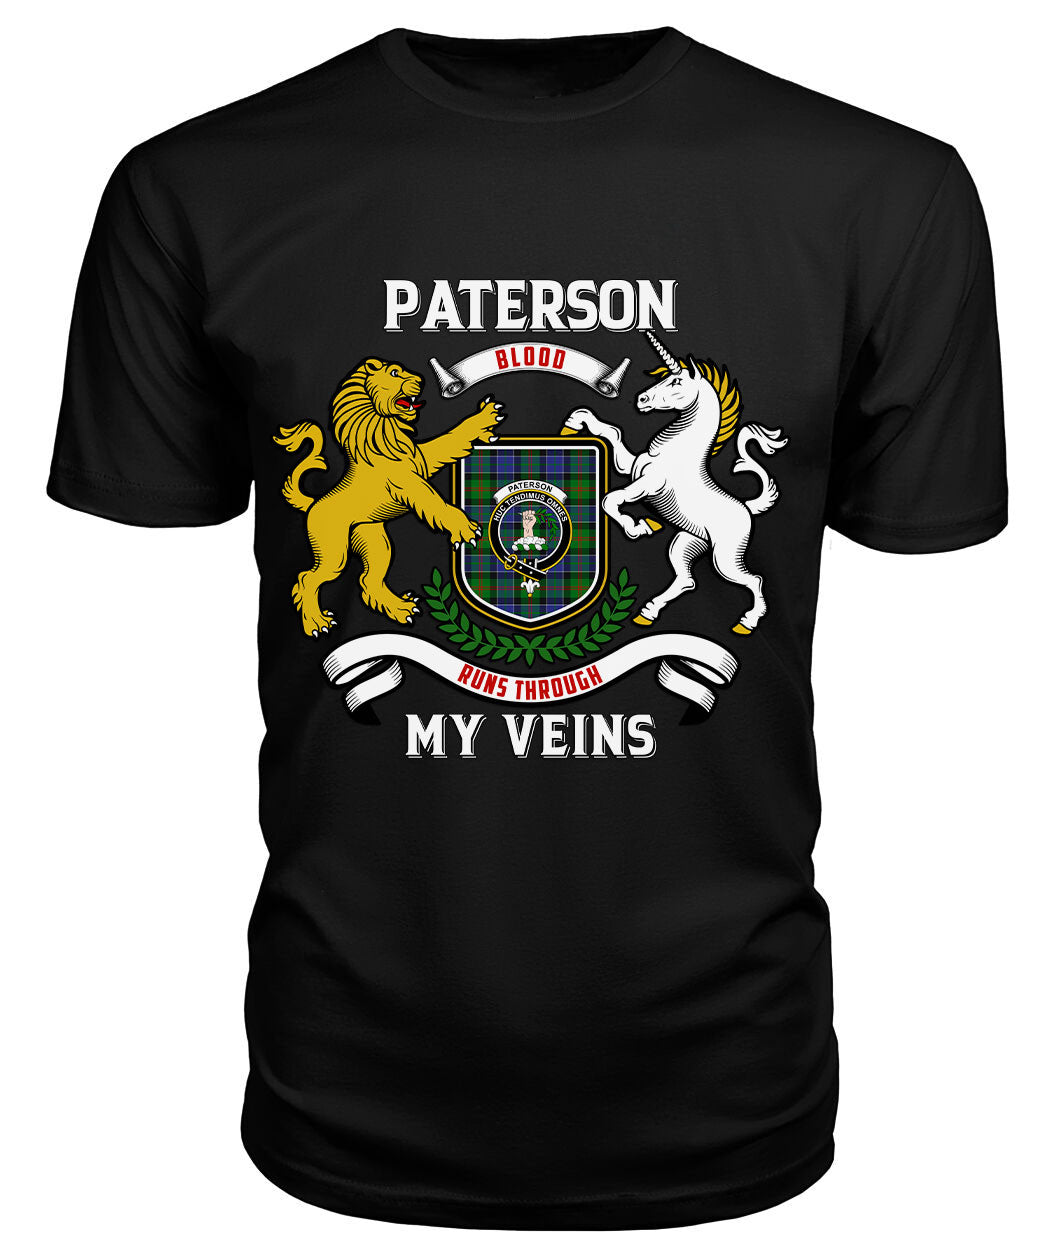 Paterson Tartan Crest 2D T-shirt - Blood Runs Through My Veins Style